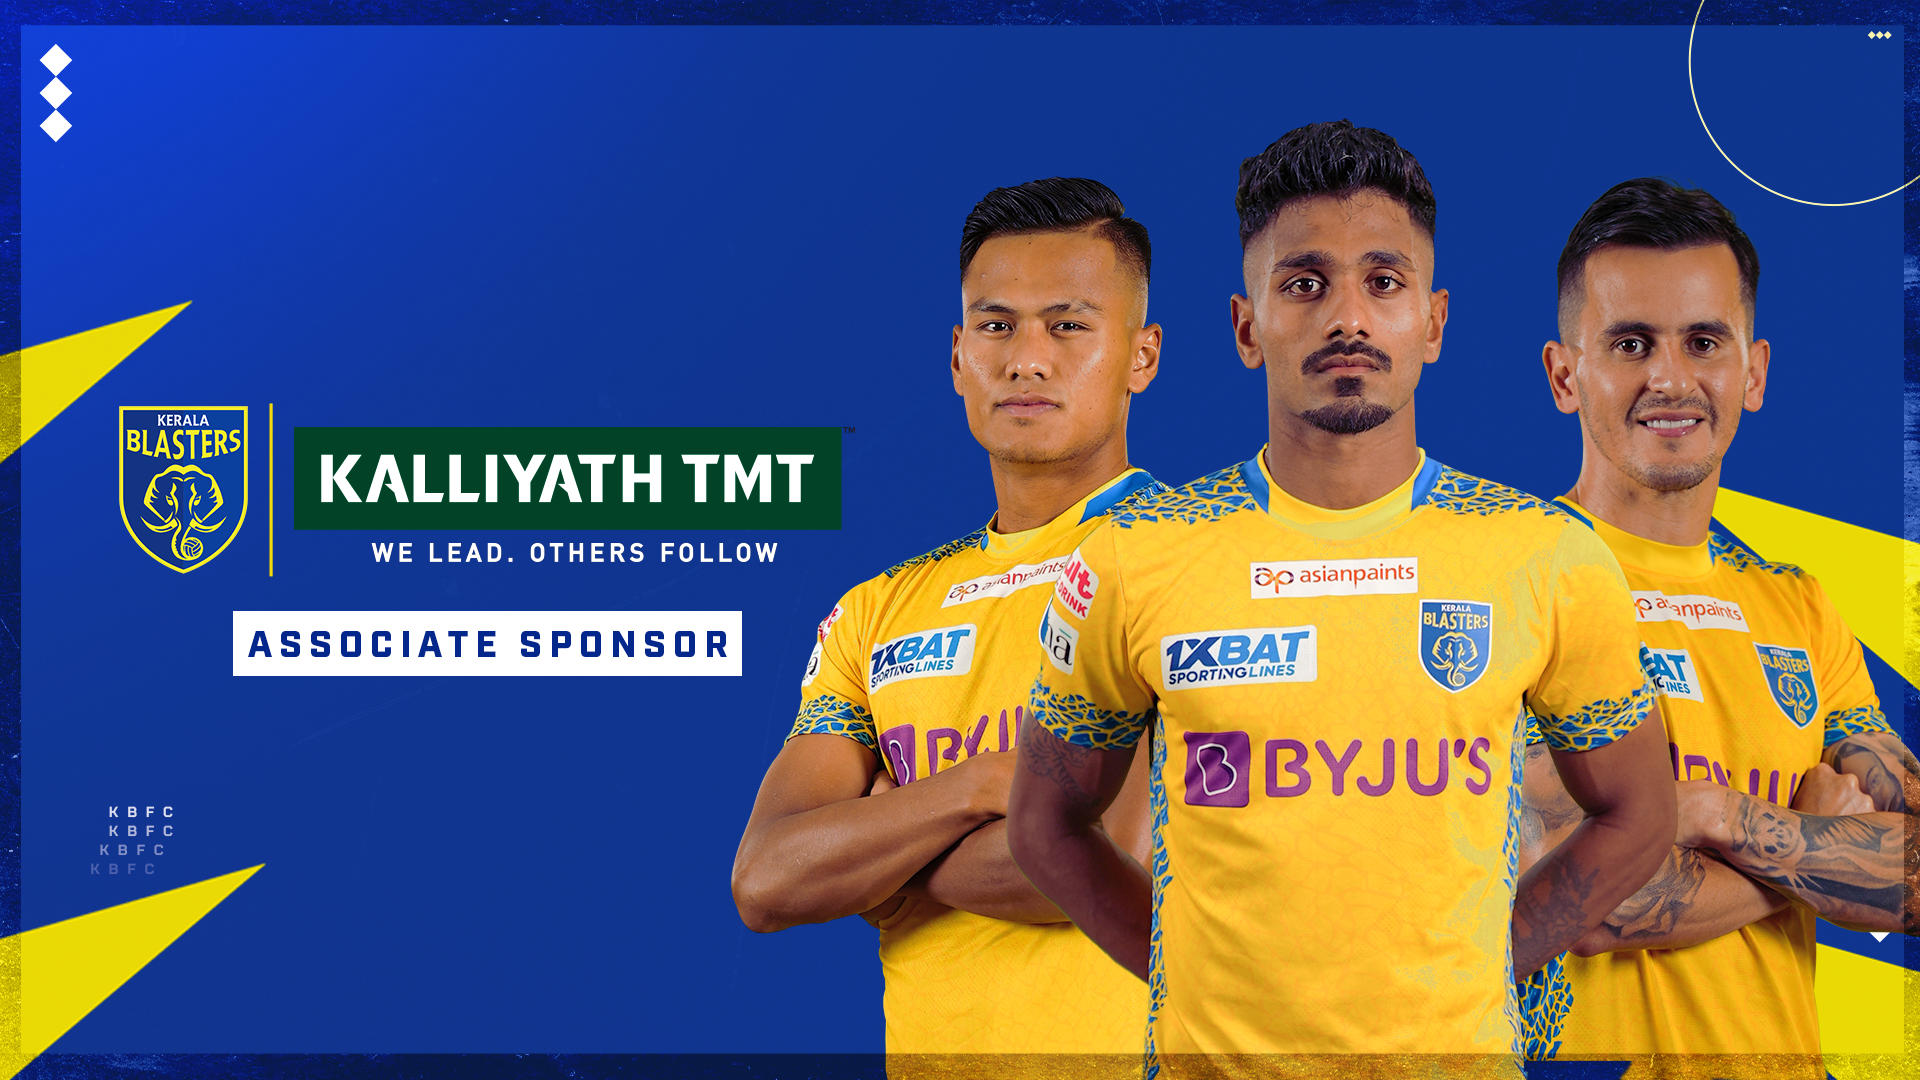 Kalliyath TMT and Kerala Blasters FC partnership sets new record